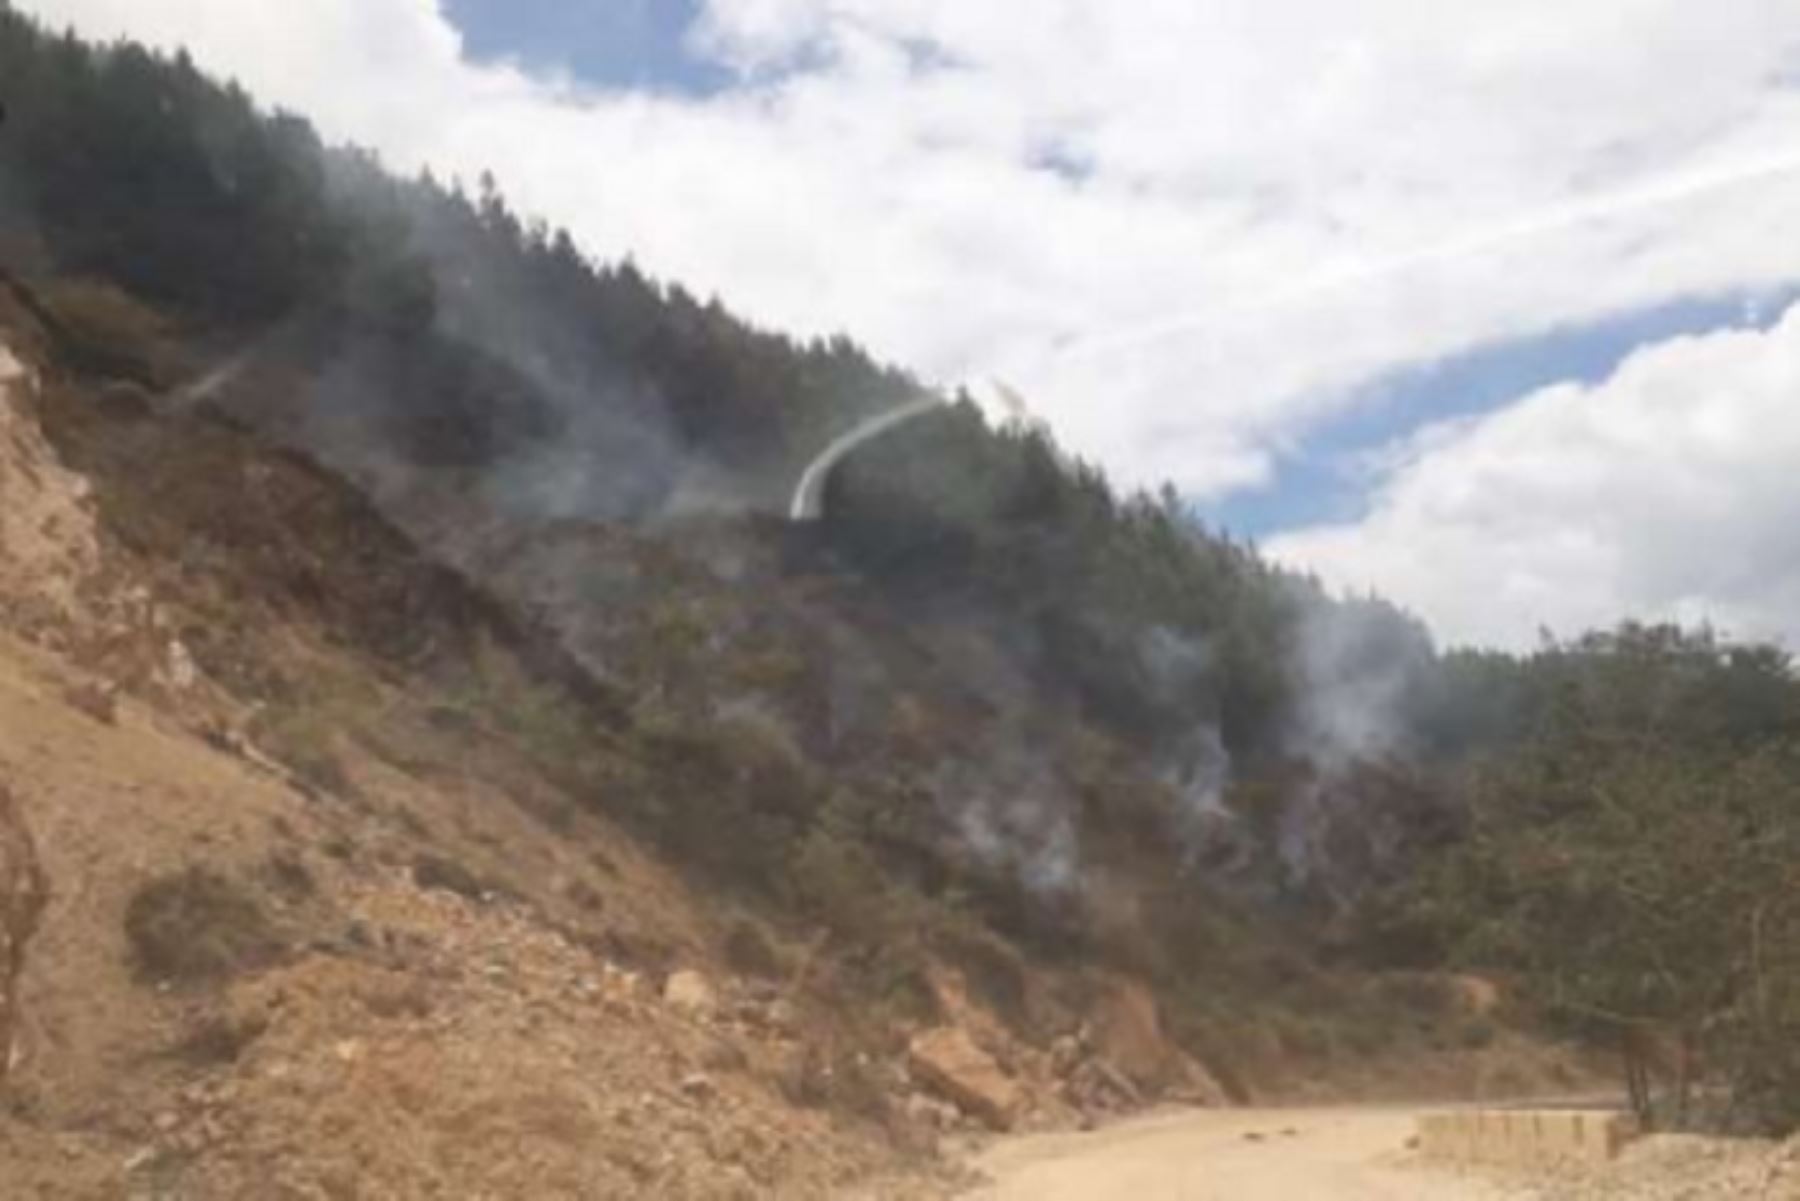 El incendio forestal que se inició el último sábado 29 de septiembre en la zona de Cabracancha, sector Pisccacocho, distrito de Ollantaytambo, en la provincia cusqueña de Urubamba, fue extinguido en su totalidad esta mañana, informó la Dirección Desconcentrada del Instituto Nacional de Defensa Civil (Indeci).